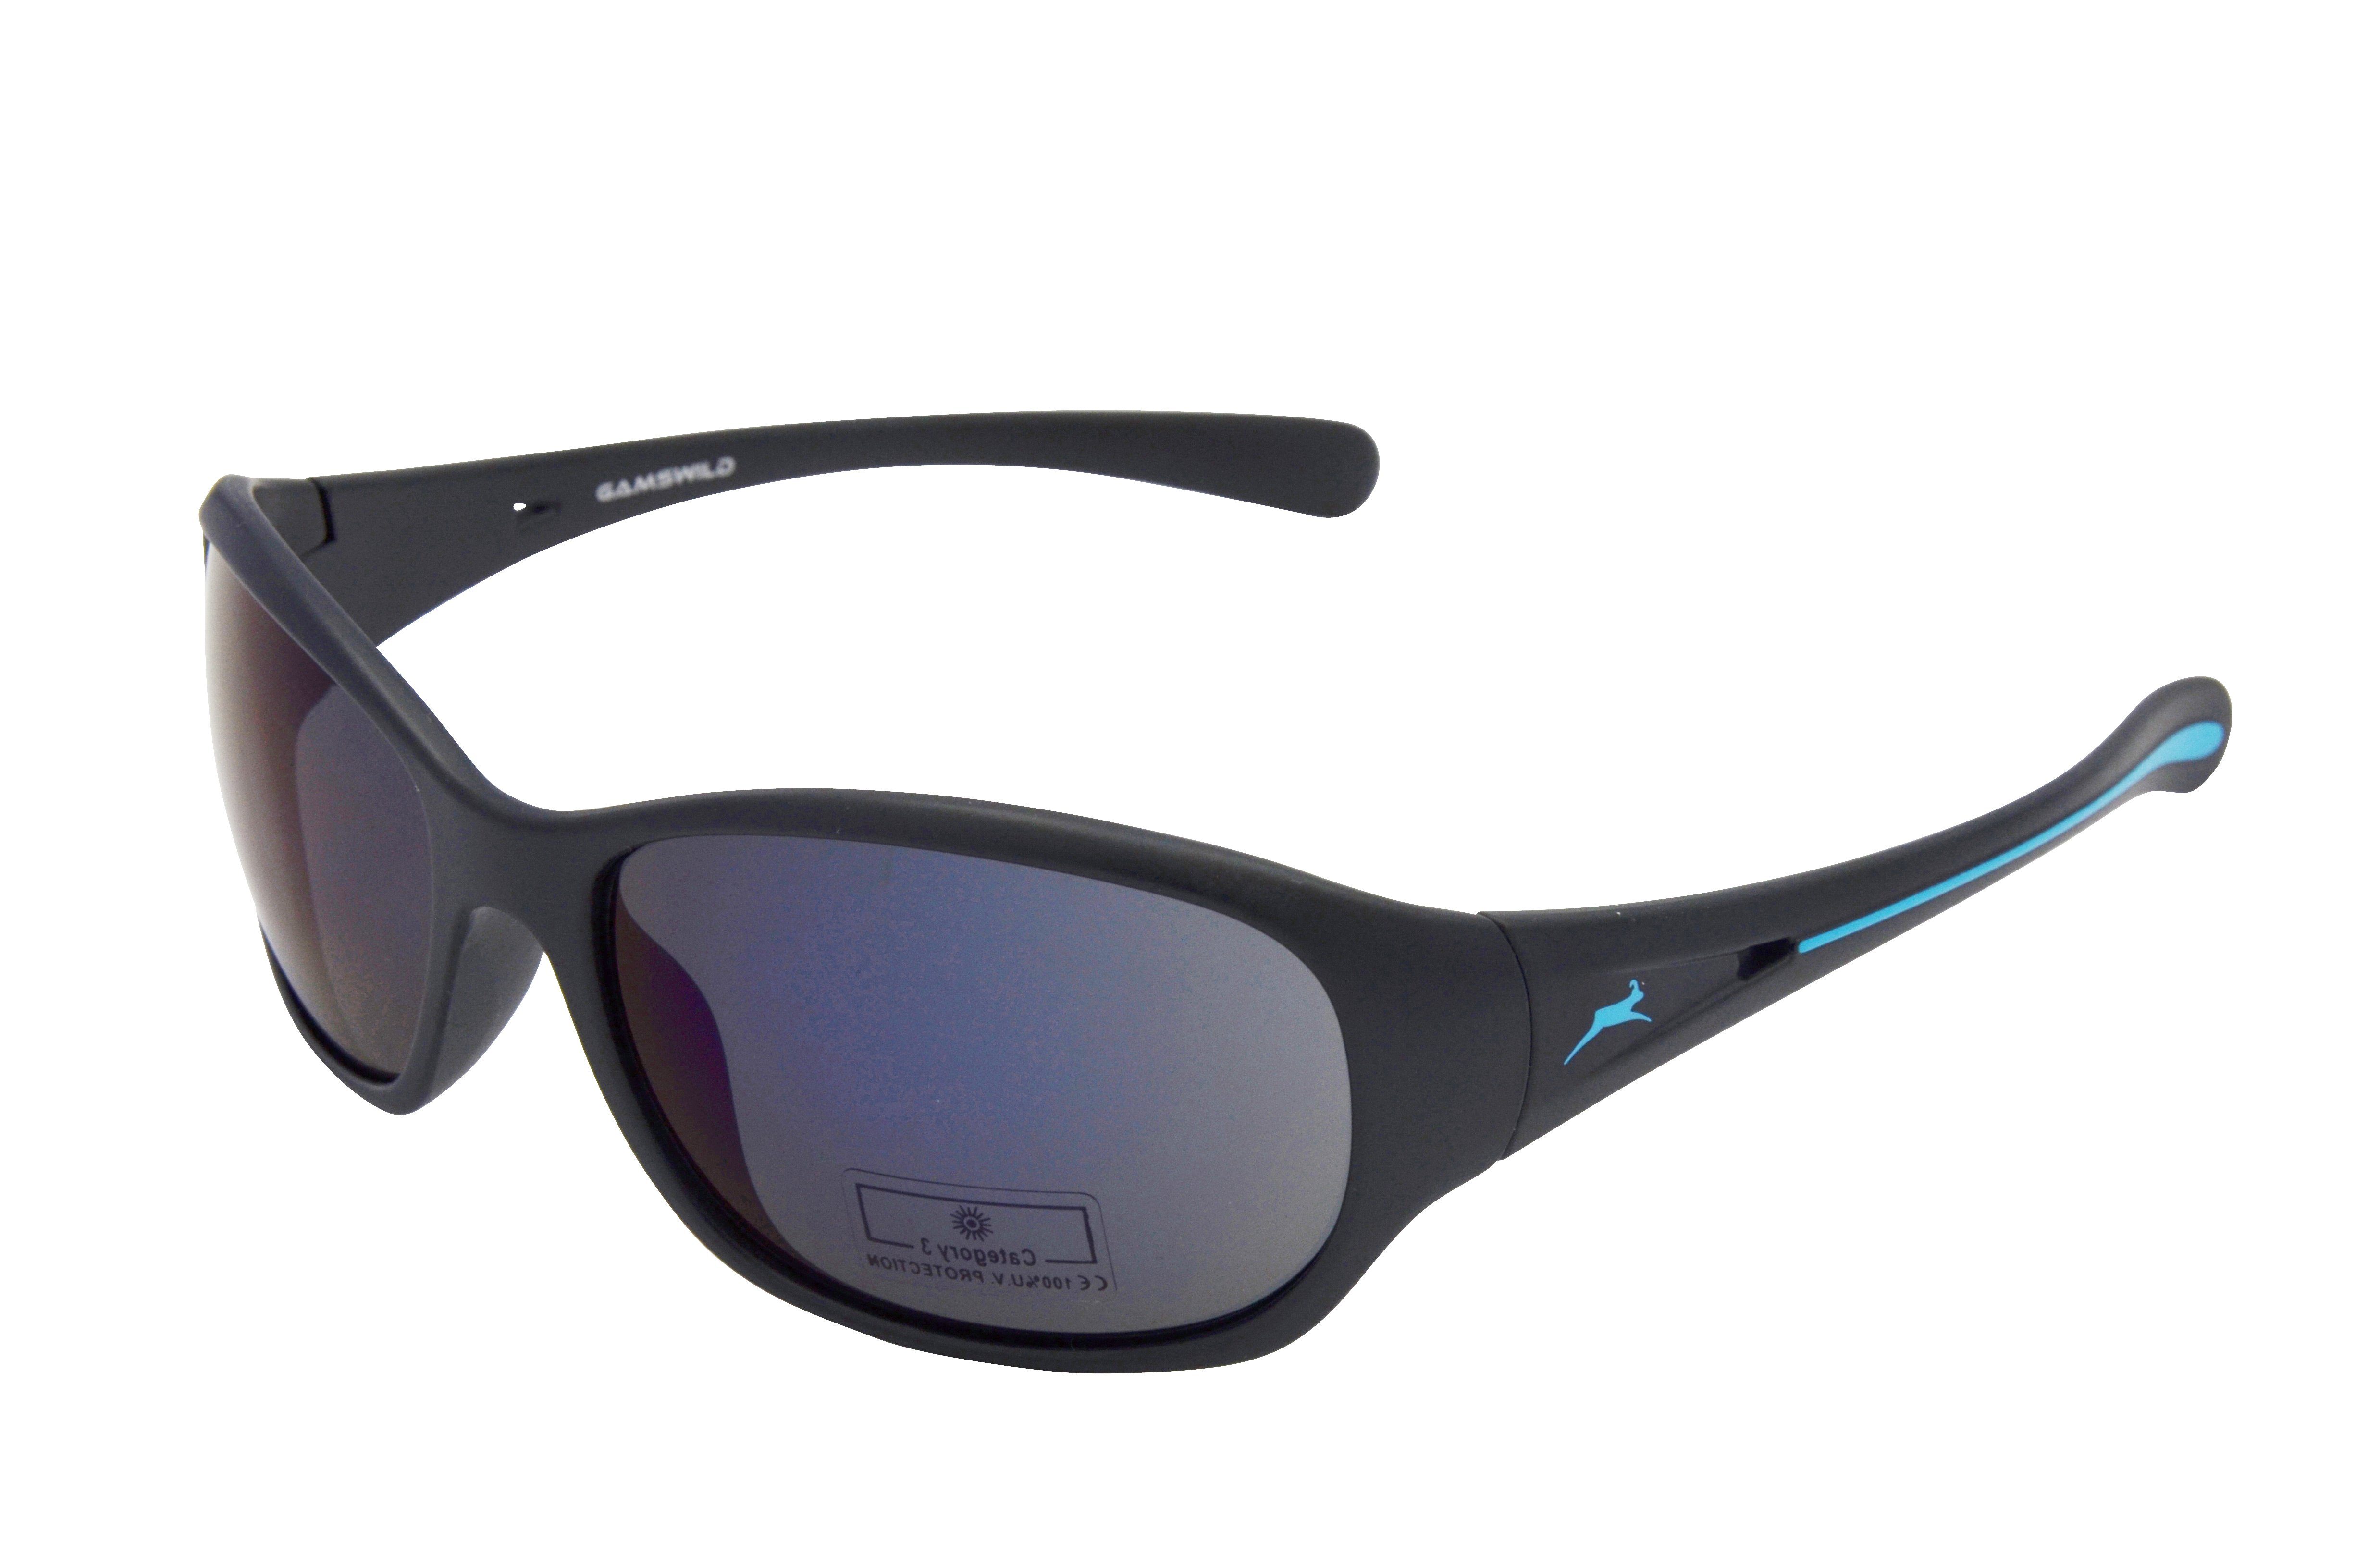 Gamswild Sonnenbrille WS2424 Damenbrille Sportbrille Skibrille Fahrradbrille, schwarz-pink, braun-grün, schwarz-blau schmal geschnittenes Damenmodell